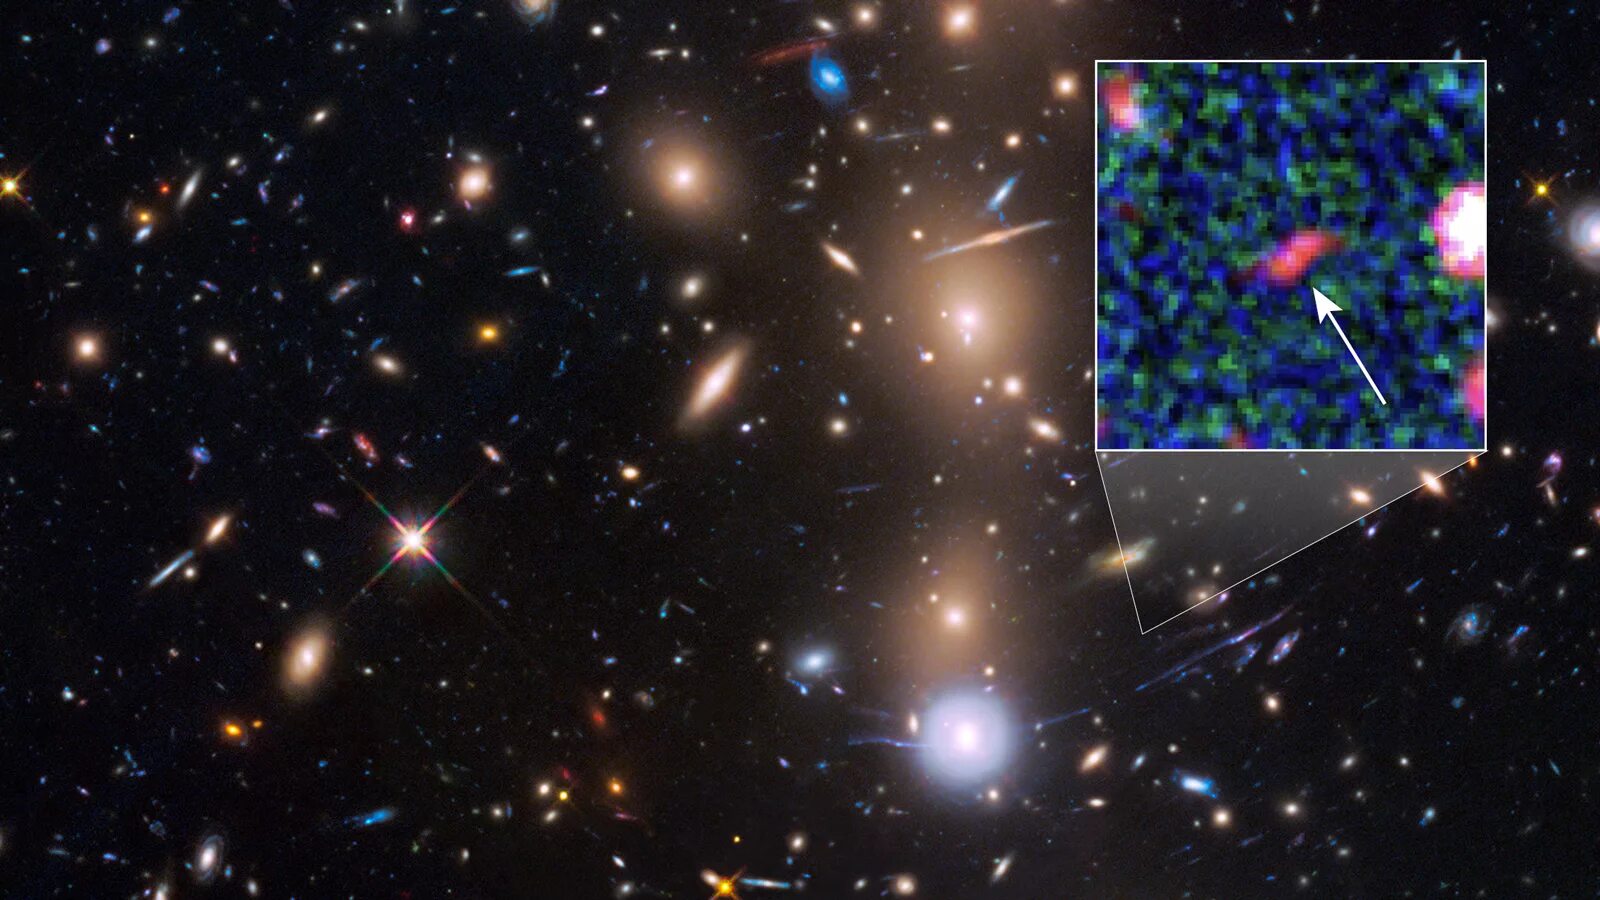 Самый далекий объект. Галактика Macs j0416. Спитцер космический телескоп. Полярная звезда снимок Хаббла. Телескоп Хаббл звезда Стивенсон.